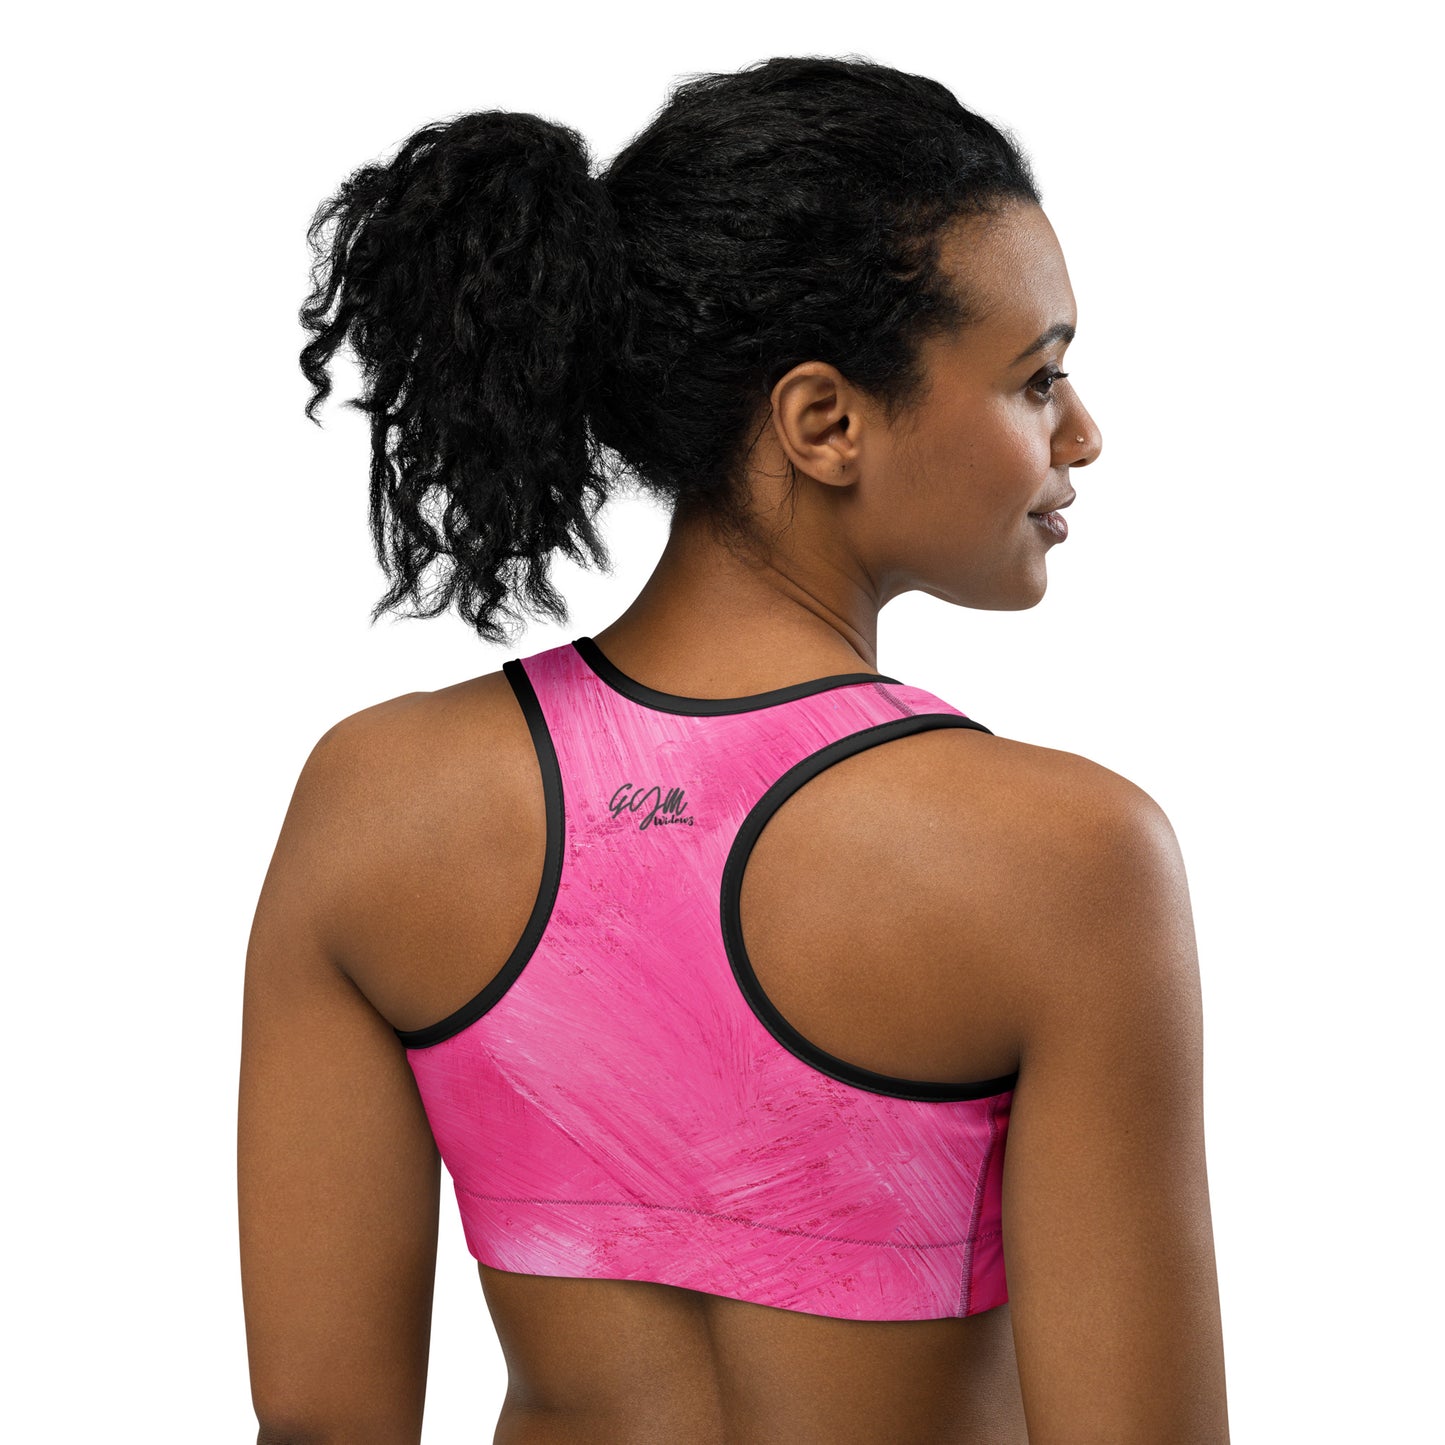 GymWidowz Sports bra - Painted Pink